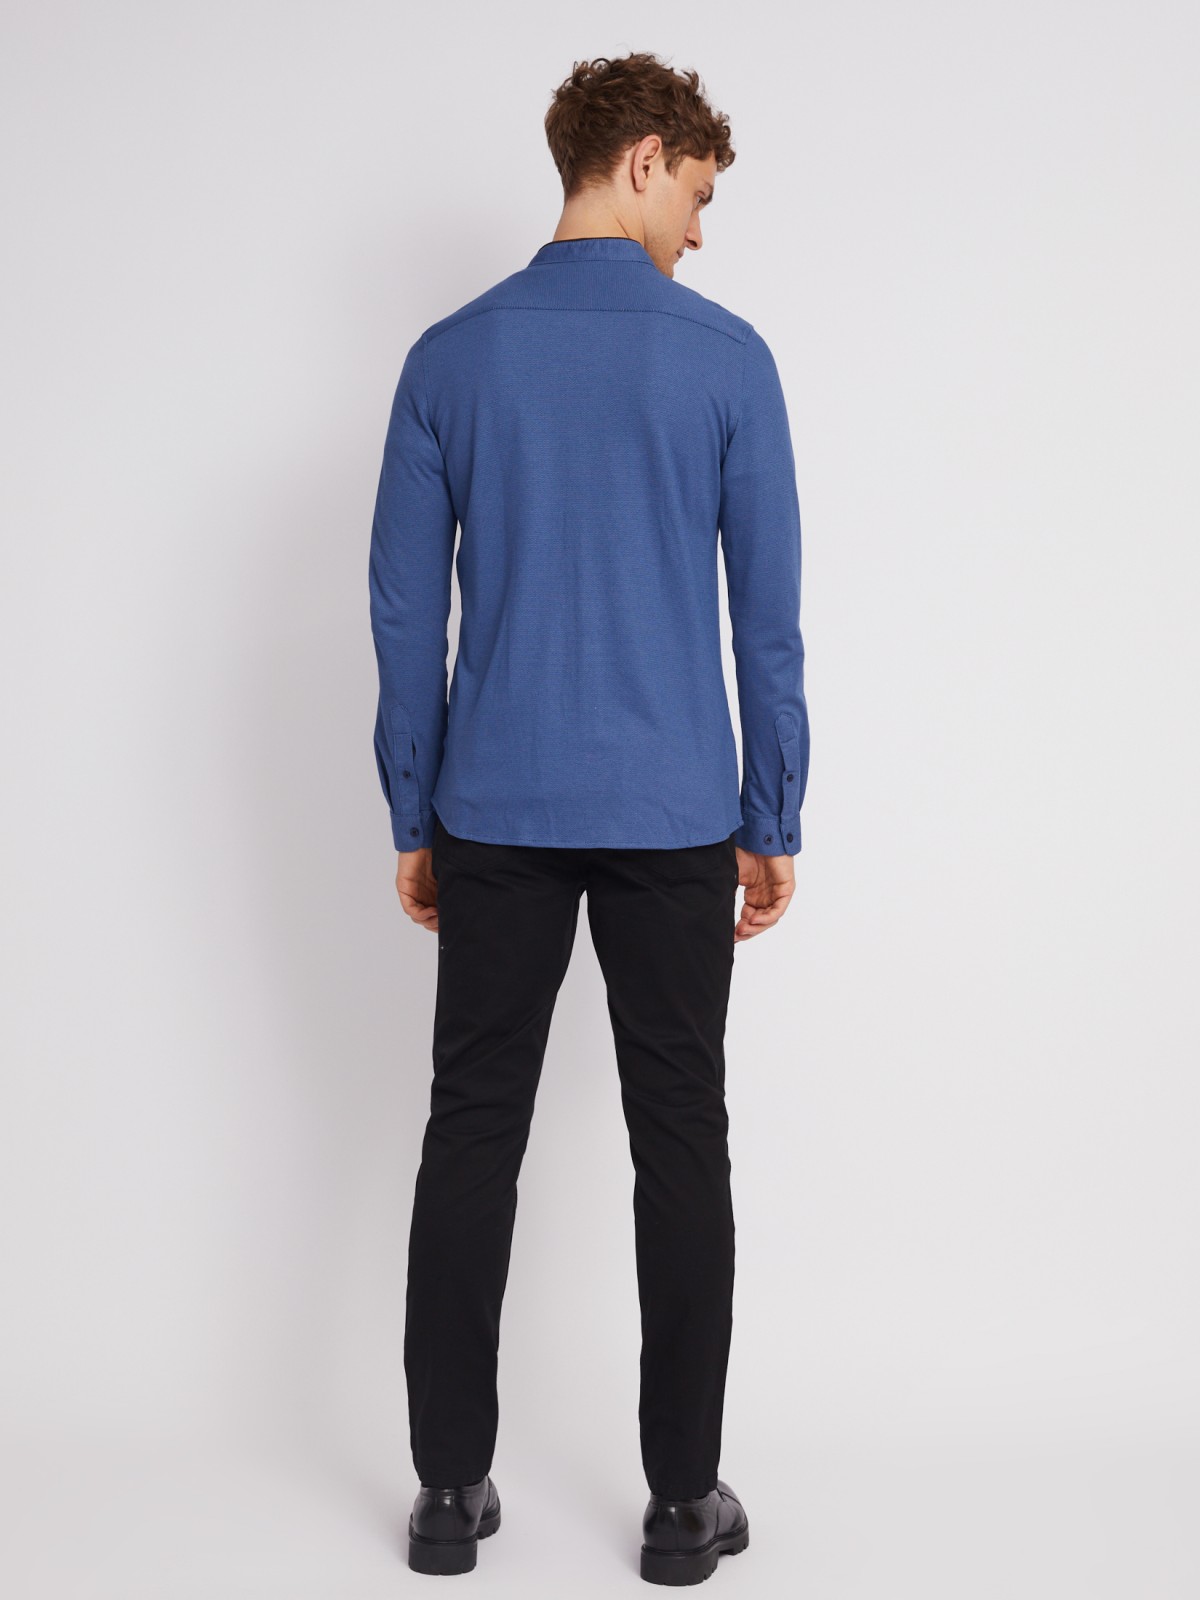 Офисная рубашка из хлопка с воротником-стойкой и длинным рукавом zolla 012322159071, цвет темно-синий, размер M - фото 6